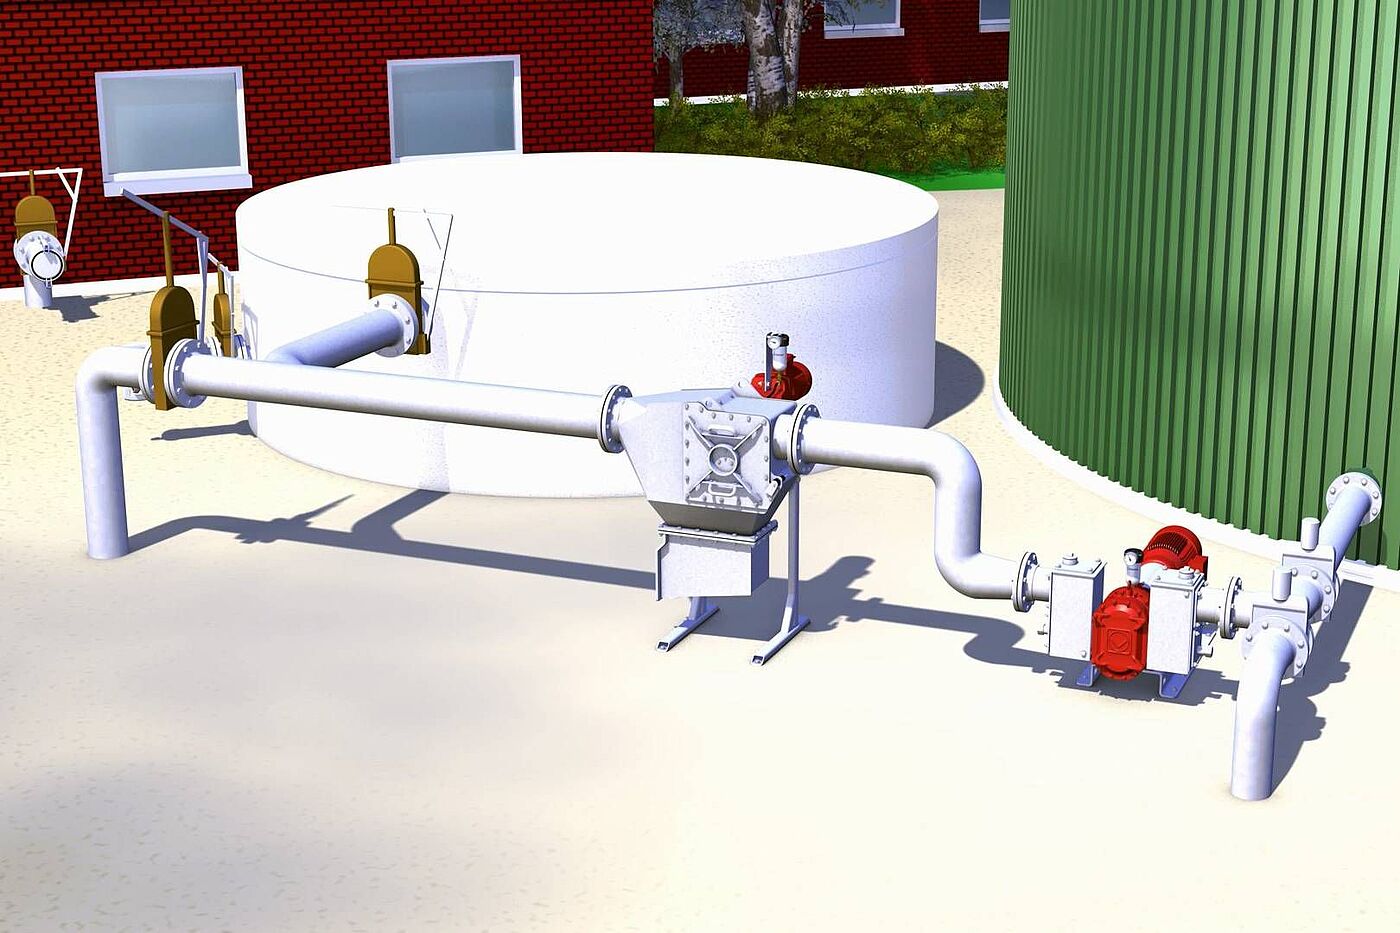 Separátor těžkých materiálů DebrisCatcher na místě v bioplynové stanici